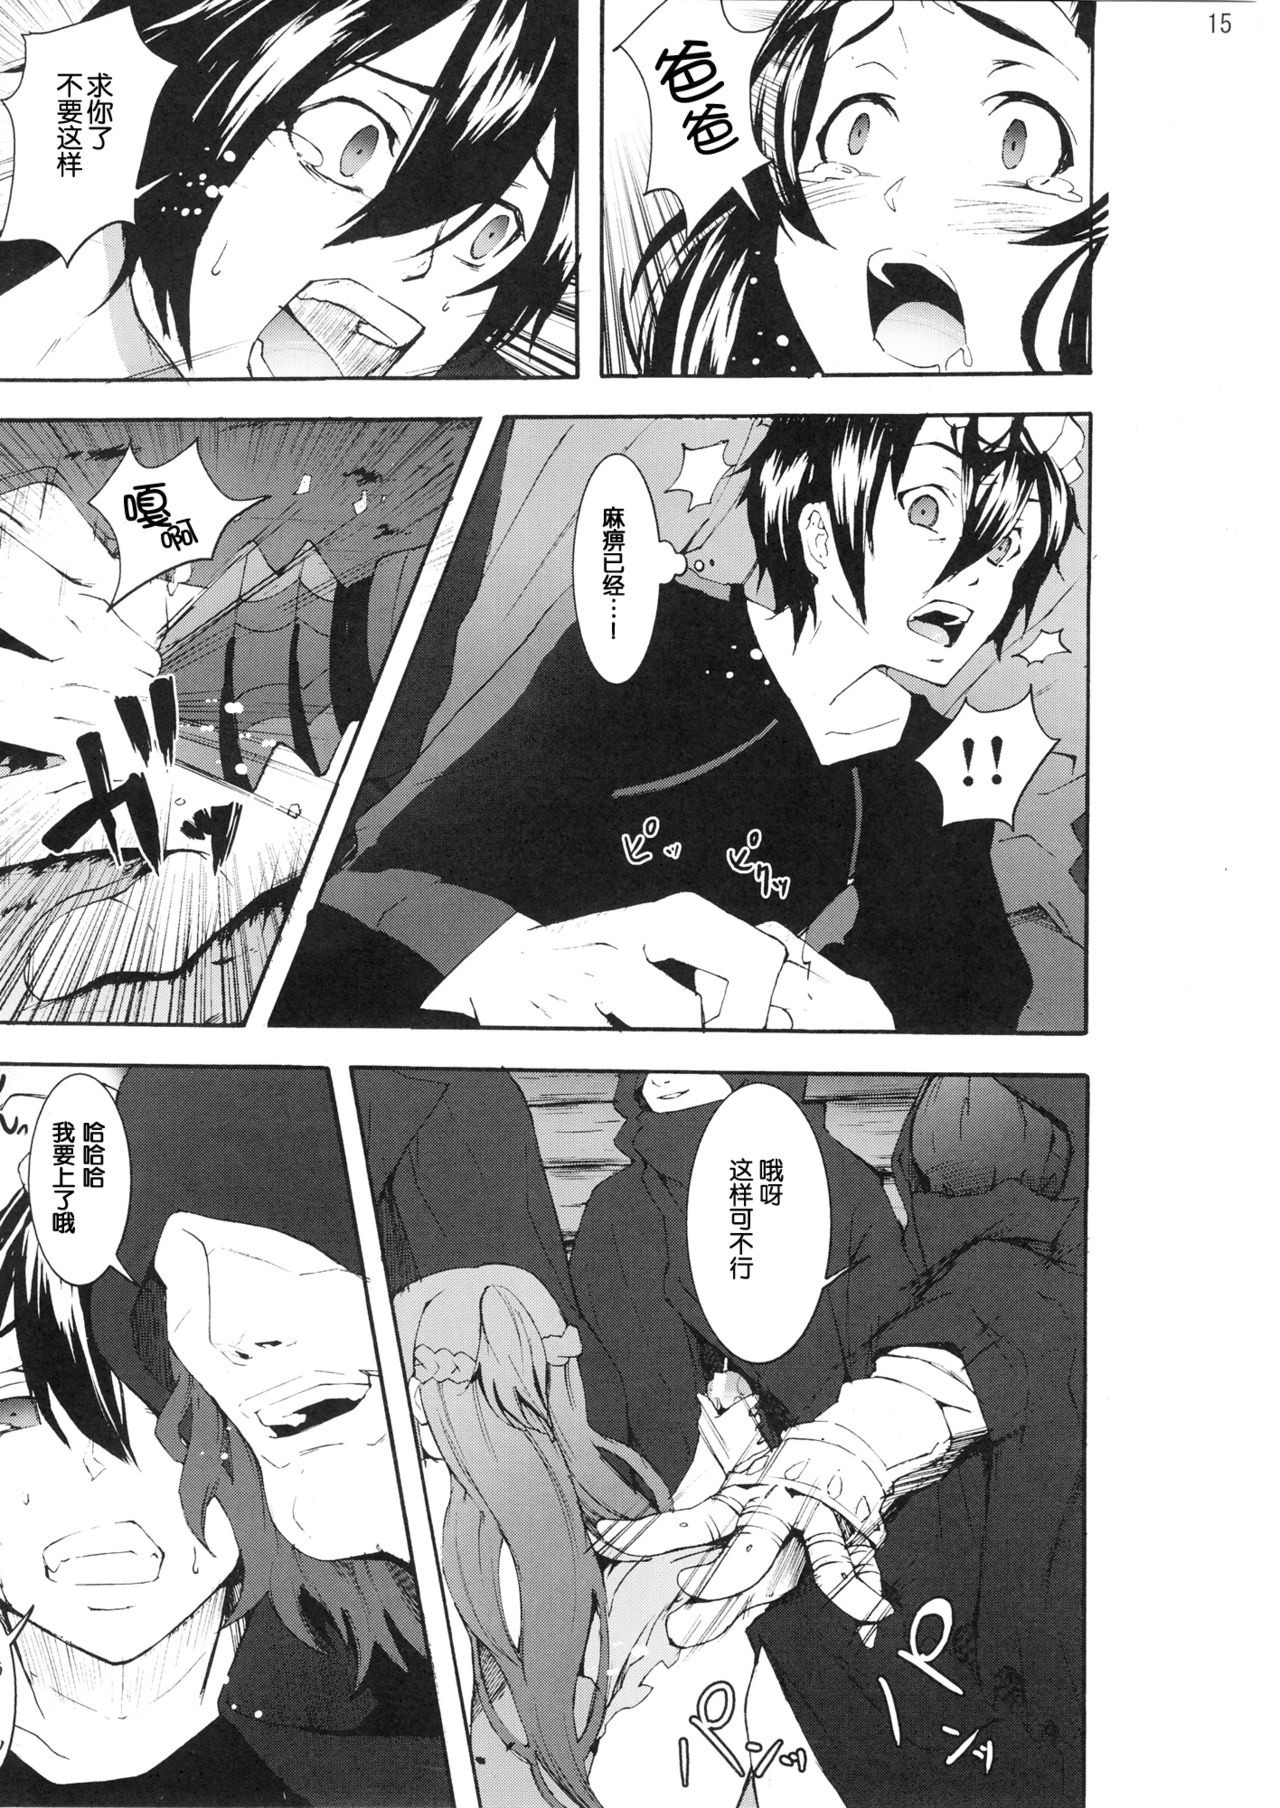 Asuna to Yui no Jigoku Rape hentai manga picture 13